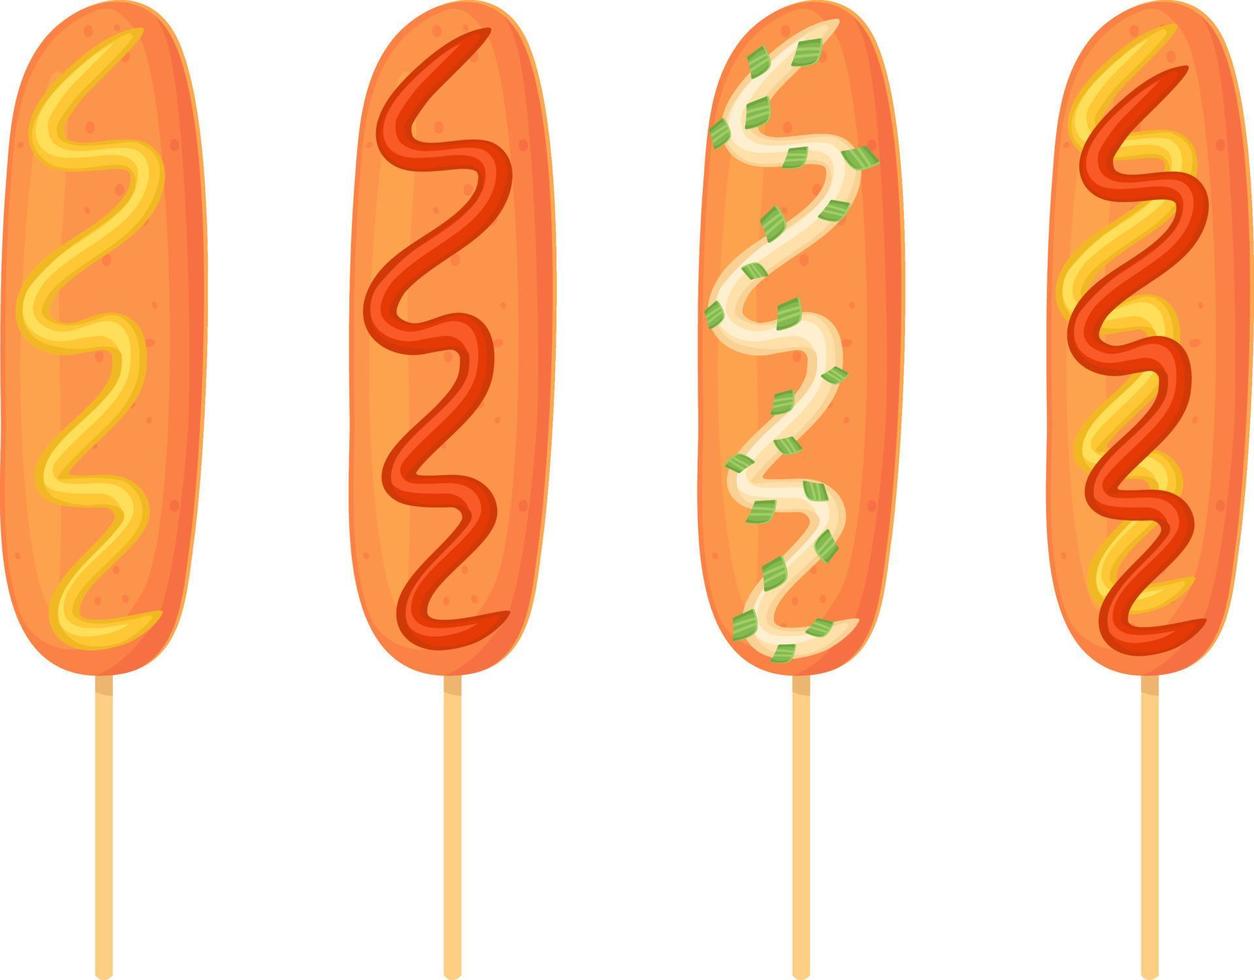 american corn dog set met verschillende saus ketchup, mayo, mosterd. straatvoedsel, fastfoodconcept. illustratie in cartoon-stijl. vector